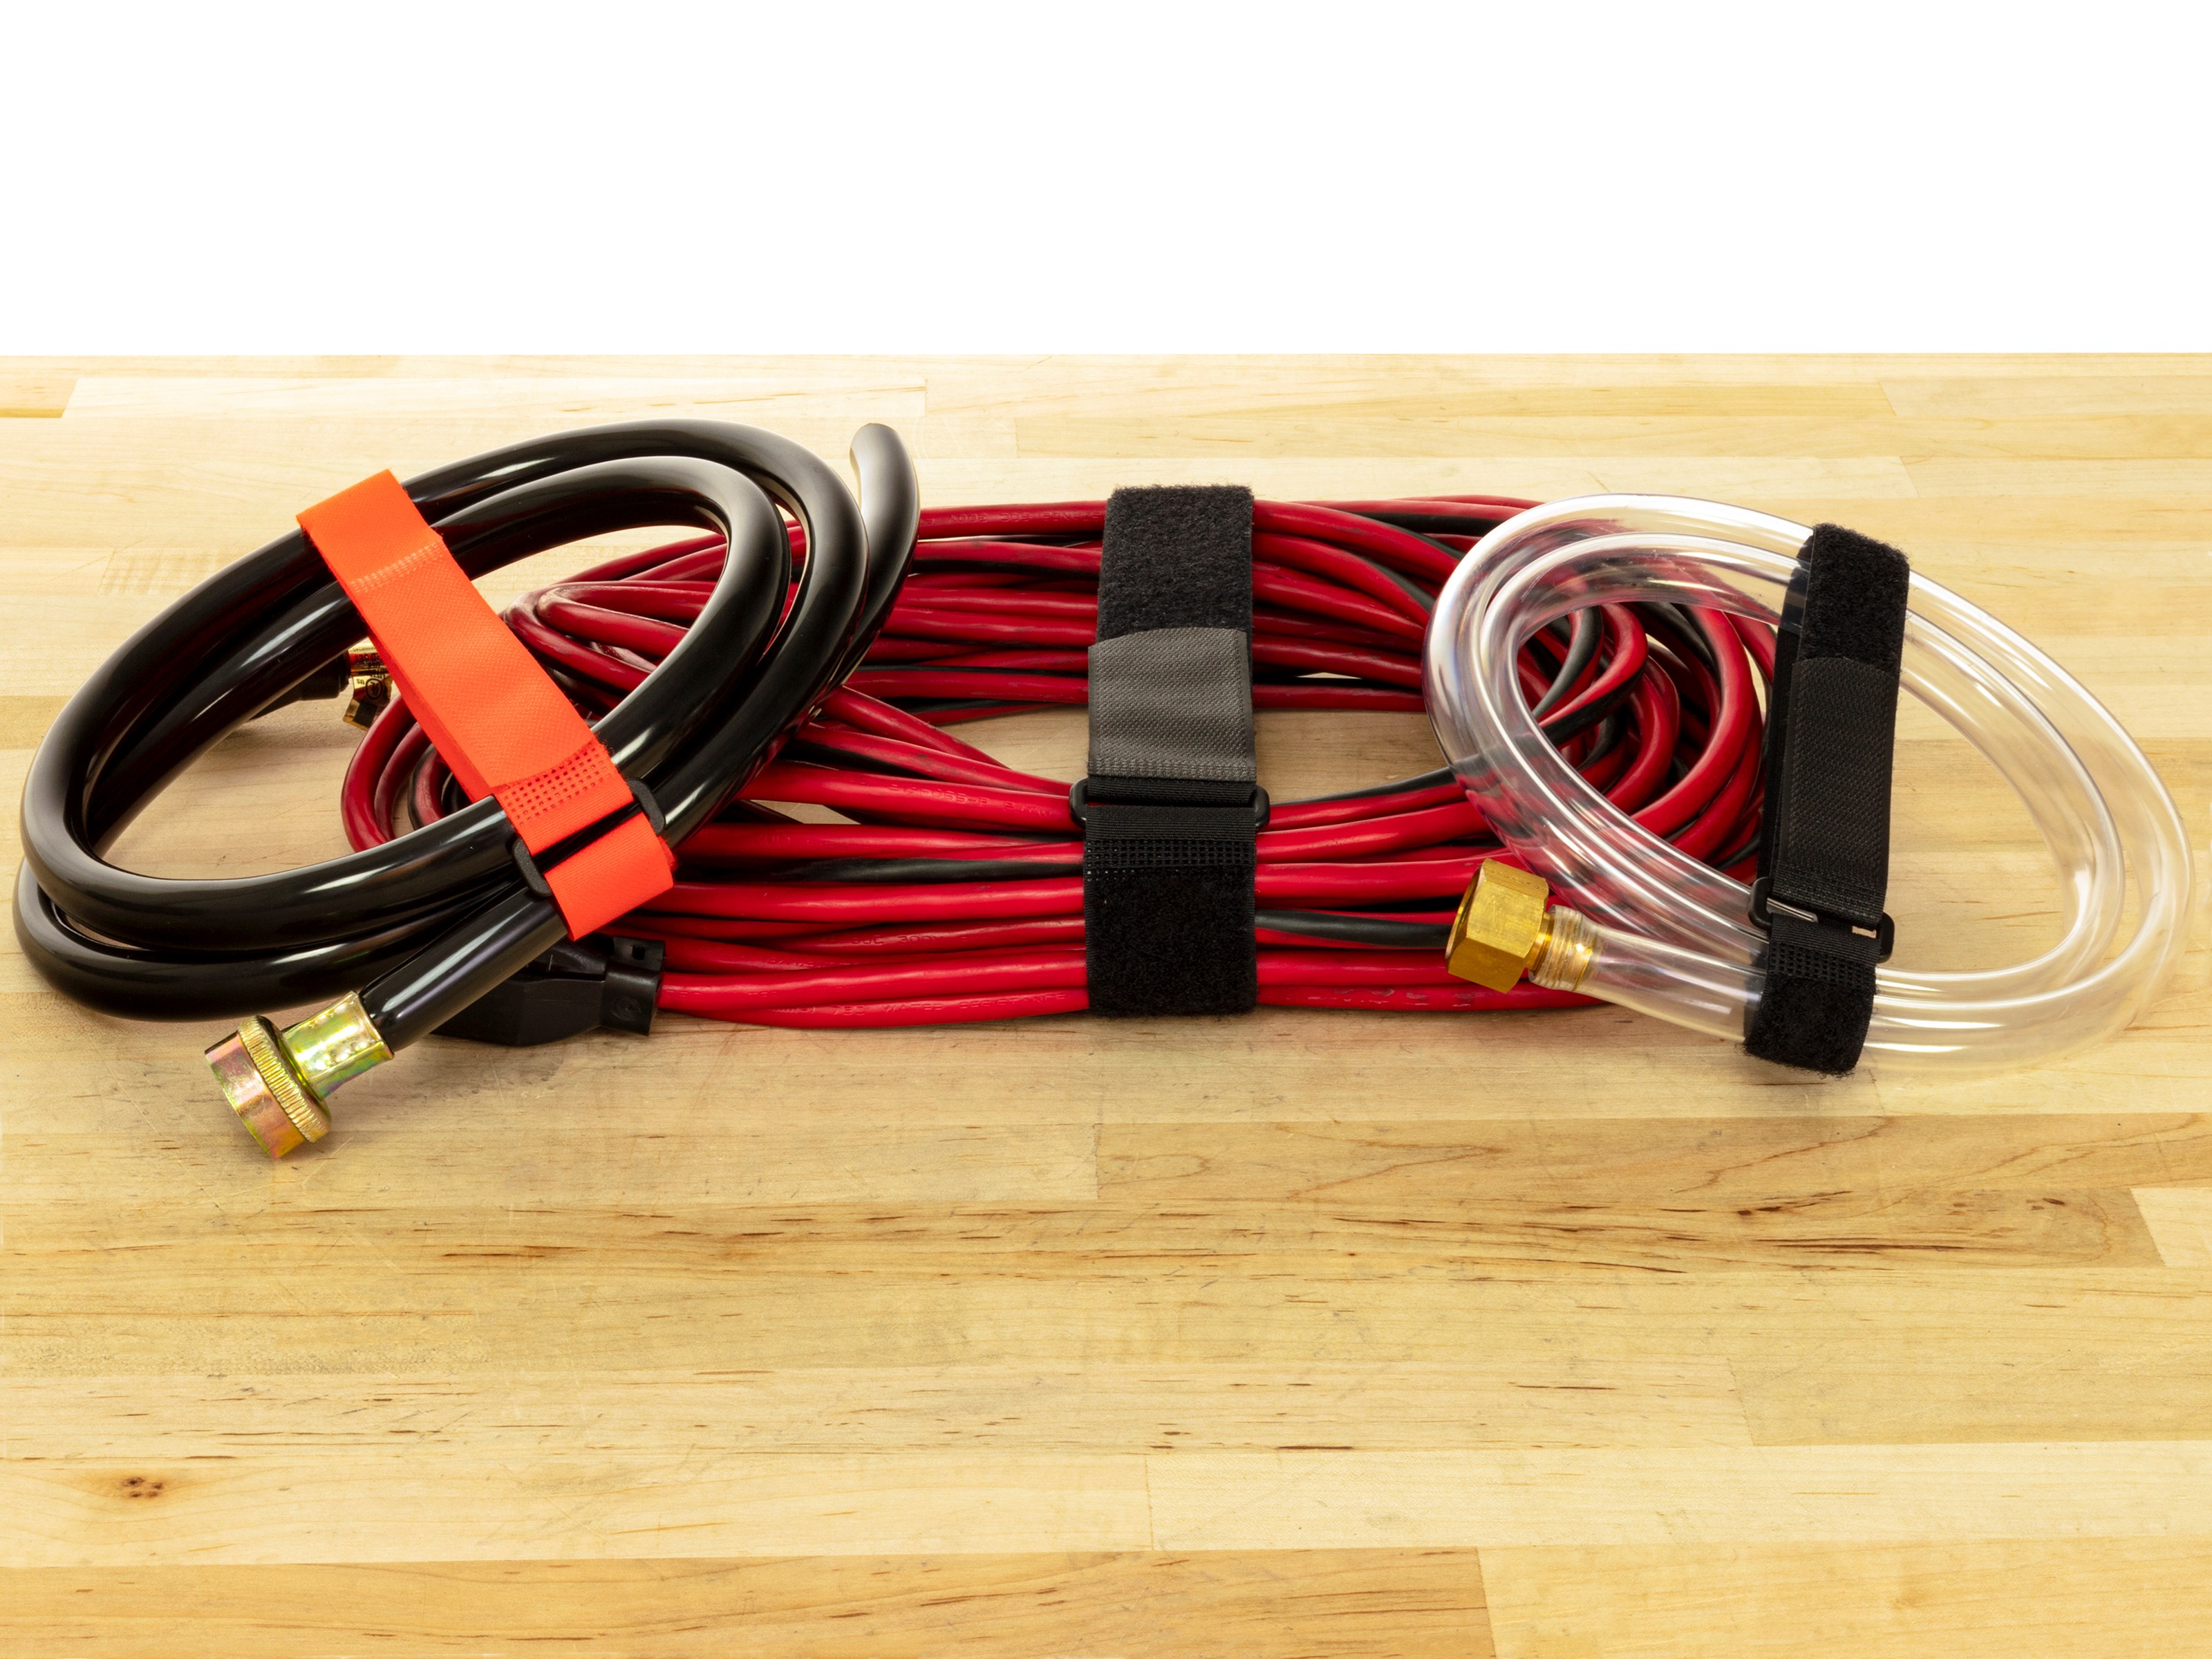 Vigaer 24 Inch Cinch Cable Tie Down Straps 12 Pcs Reusable Hook